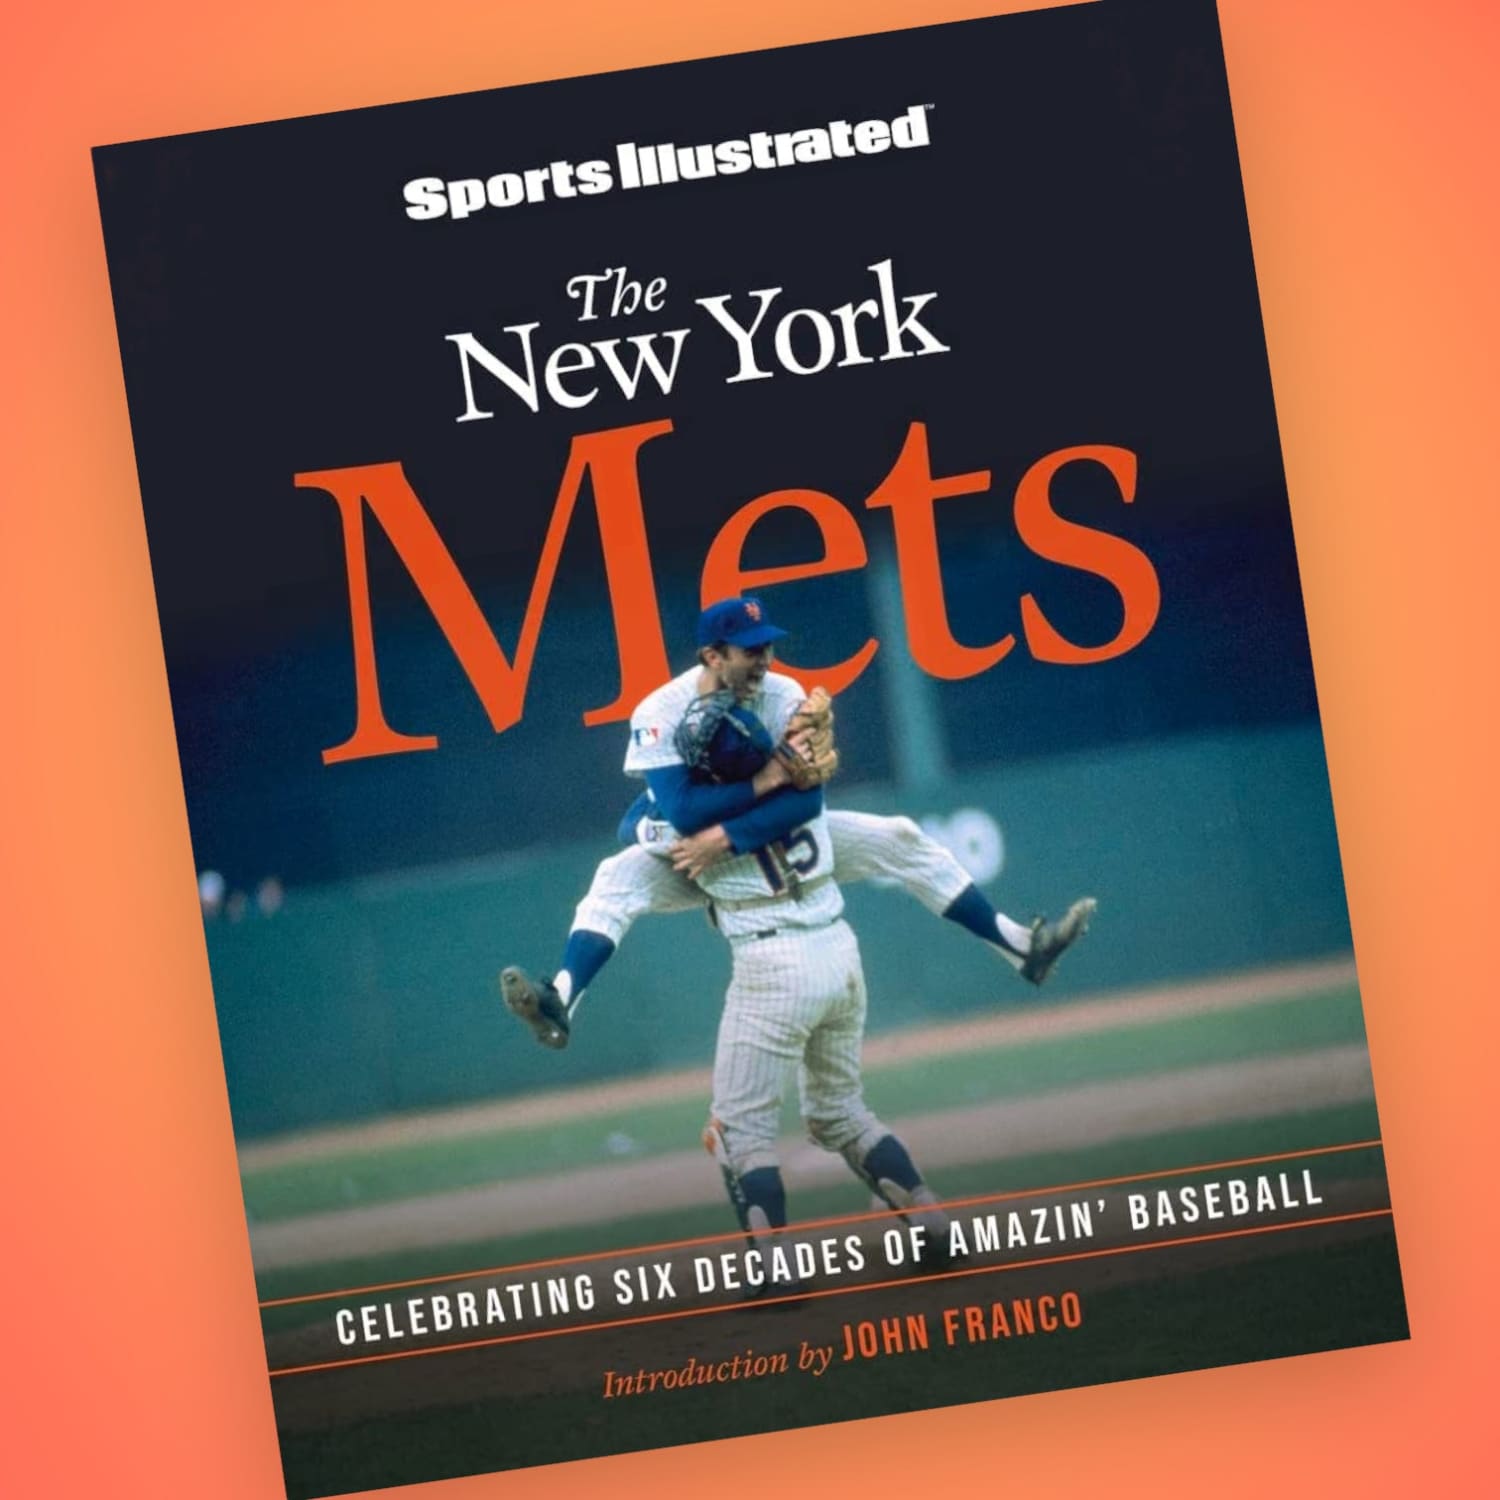 Amazin' New York Mets